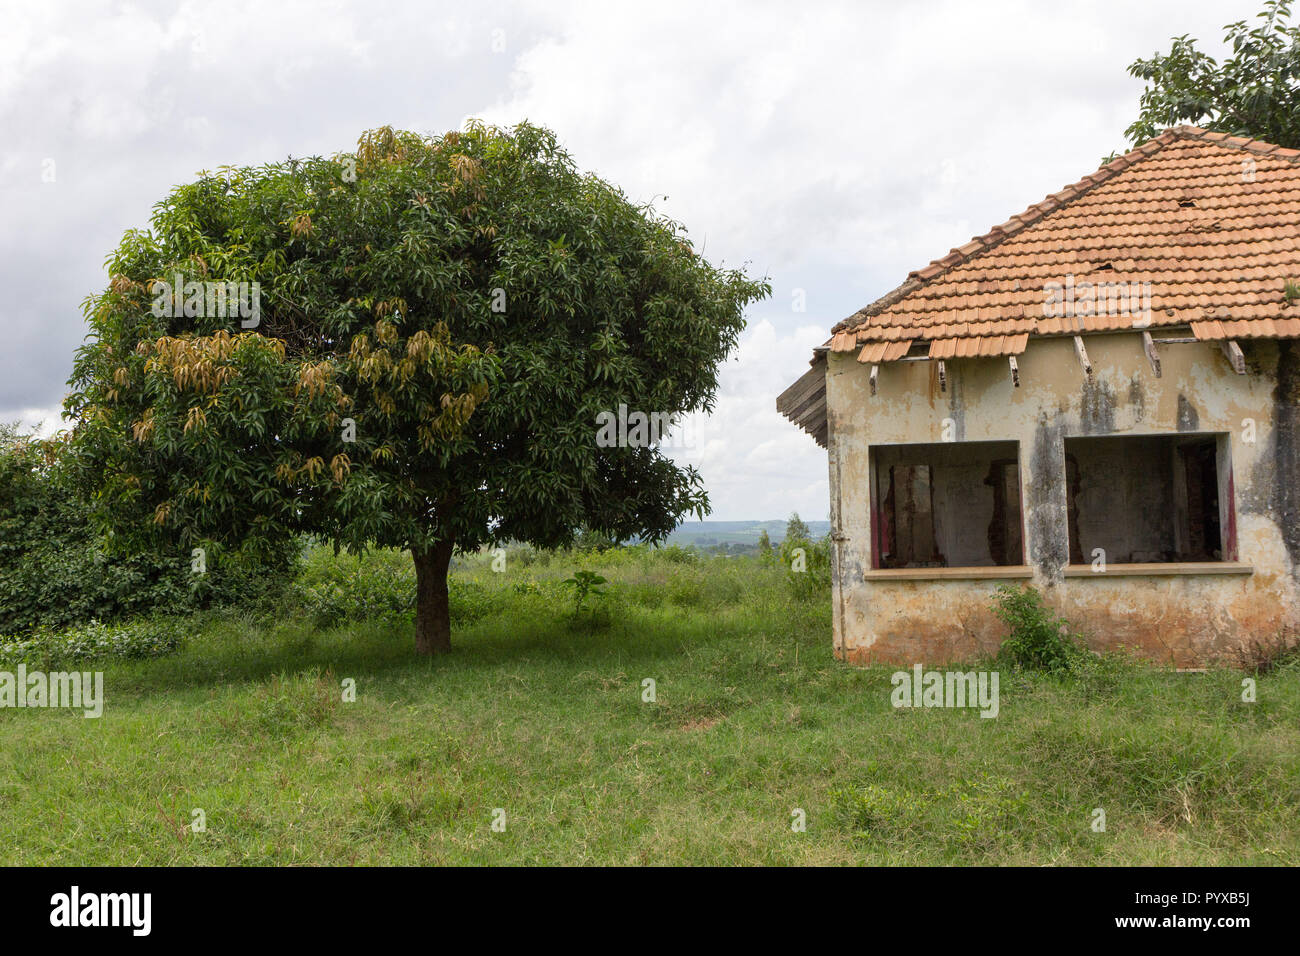 Ein verlassenes Haus in Ruinen. Foto aufgenommen in Ssezibwa, Uganda am 23. April 2017. Stockfoto